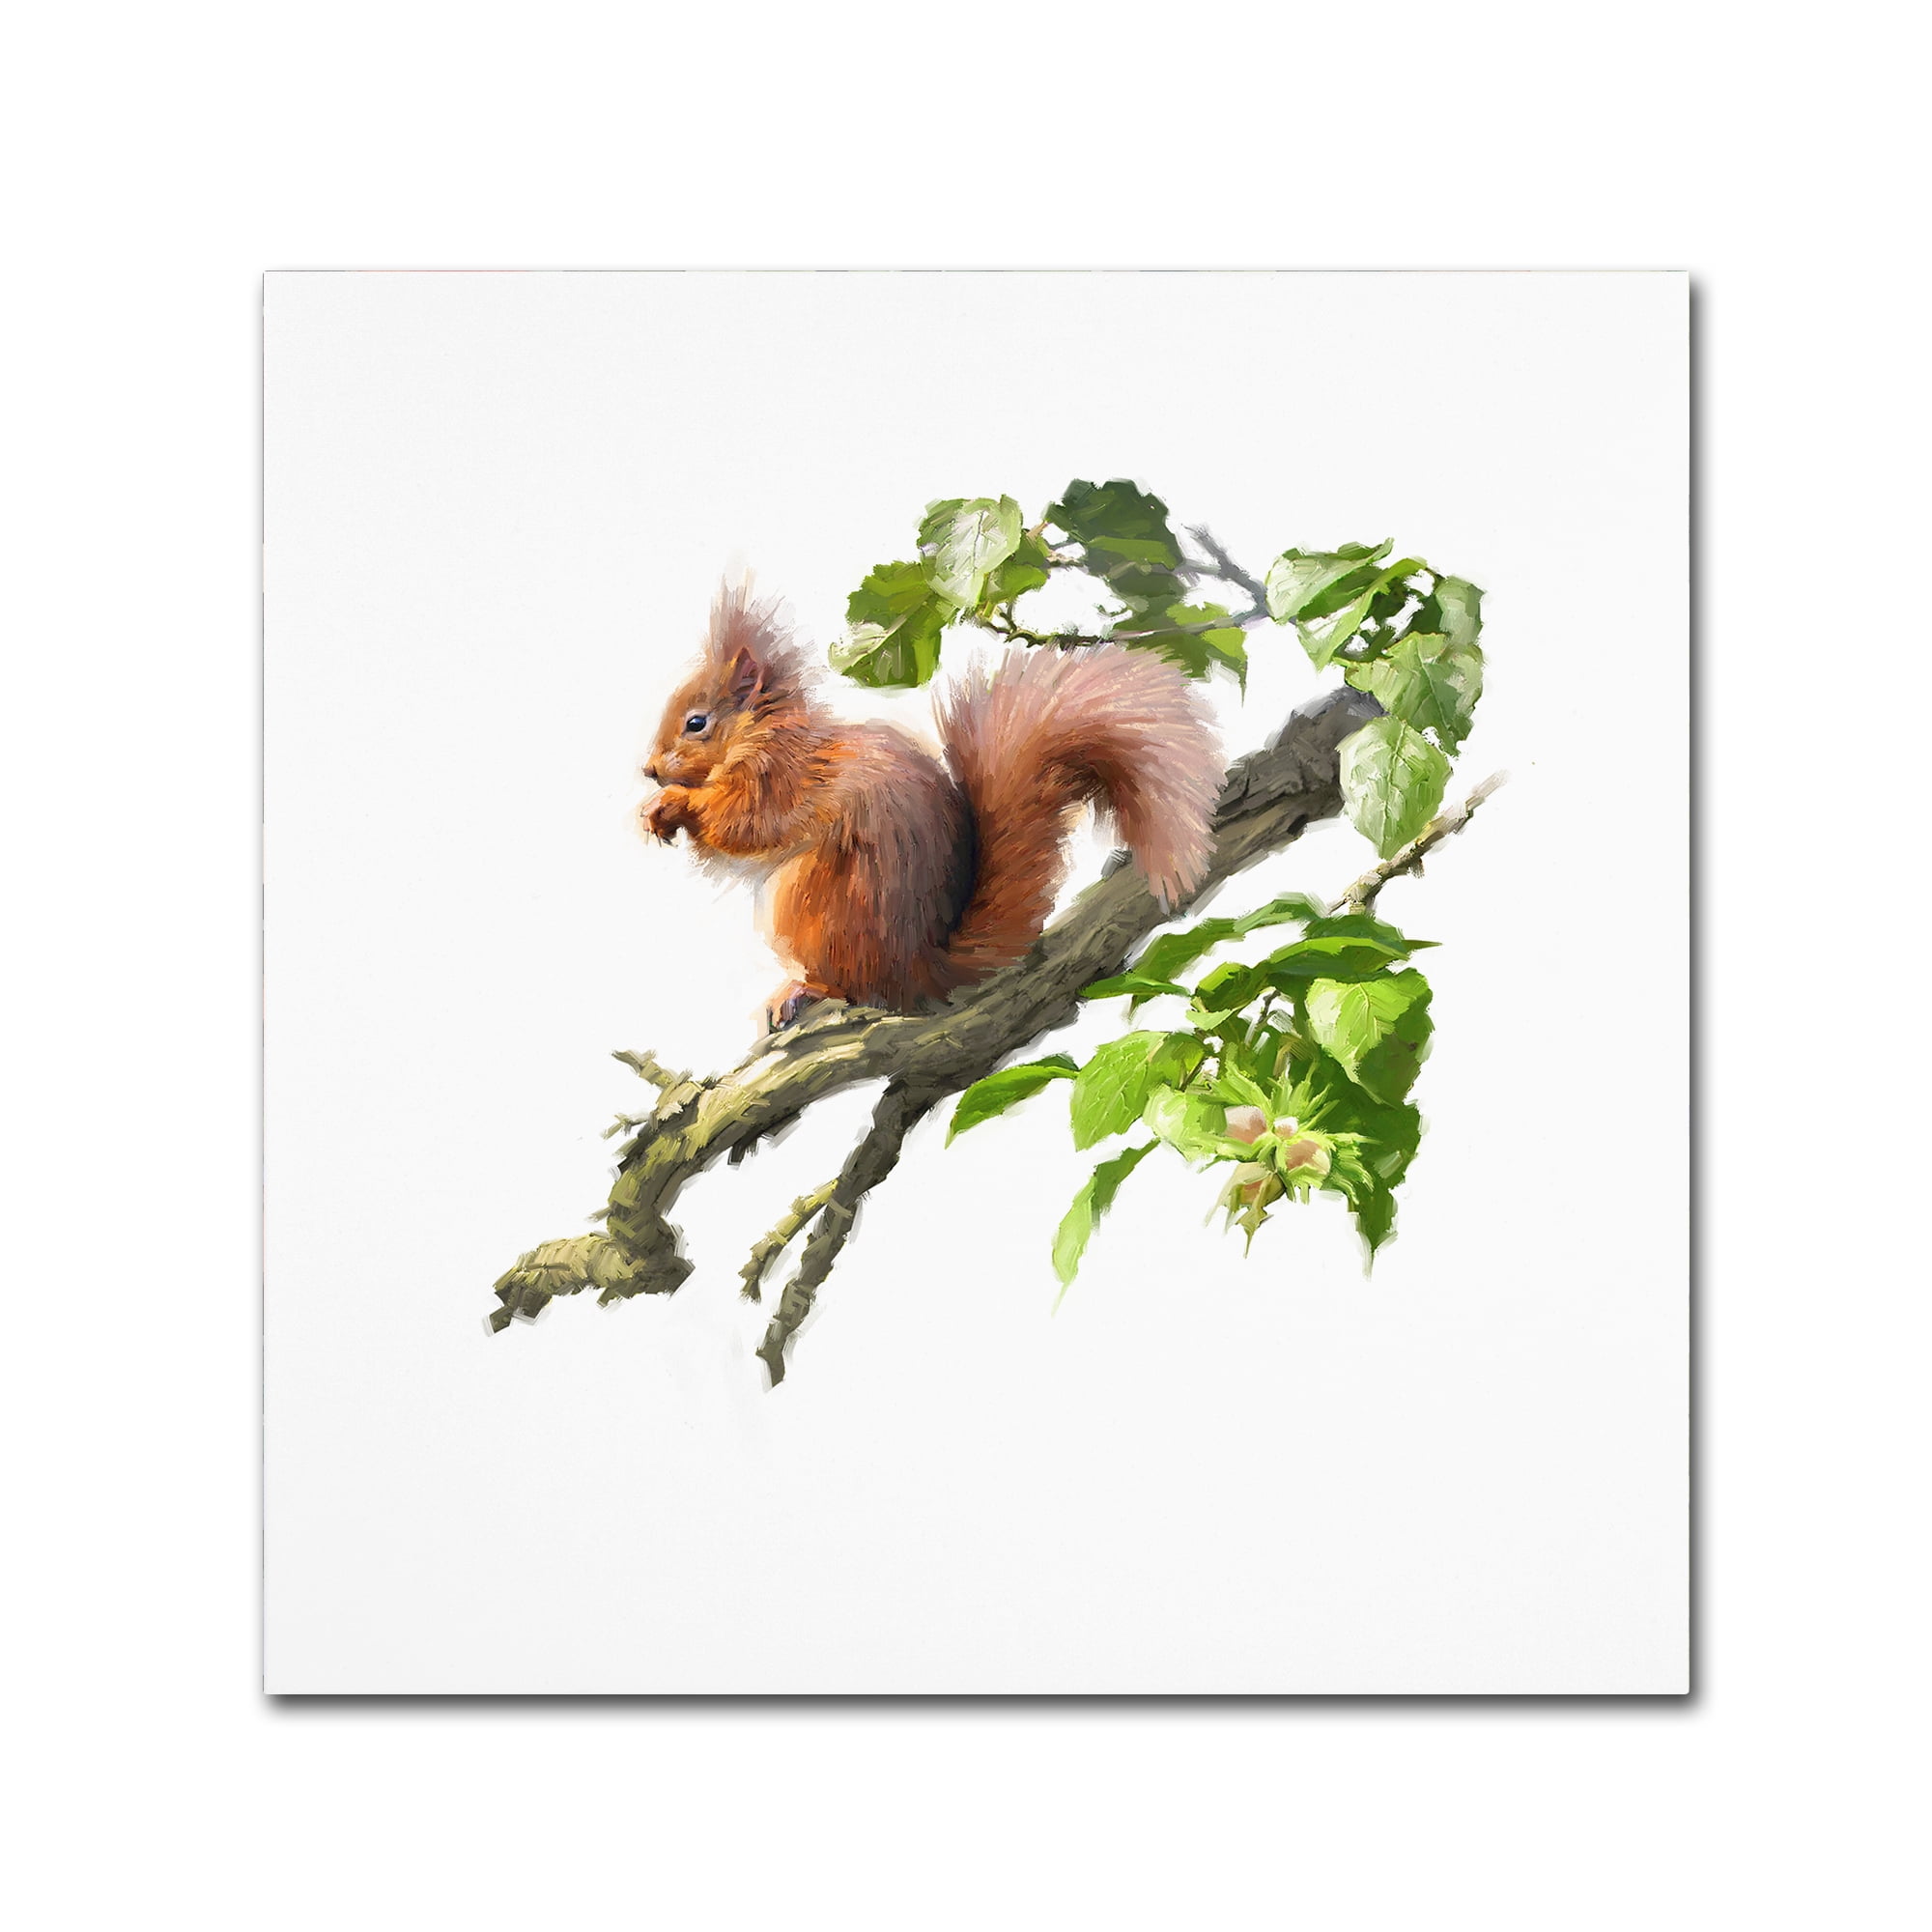 Trademark Fine 'Red Squirrel' Art by The Macneil Studio - Walmart.com